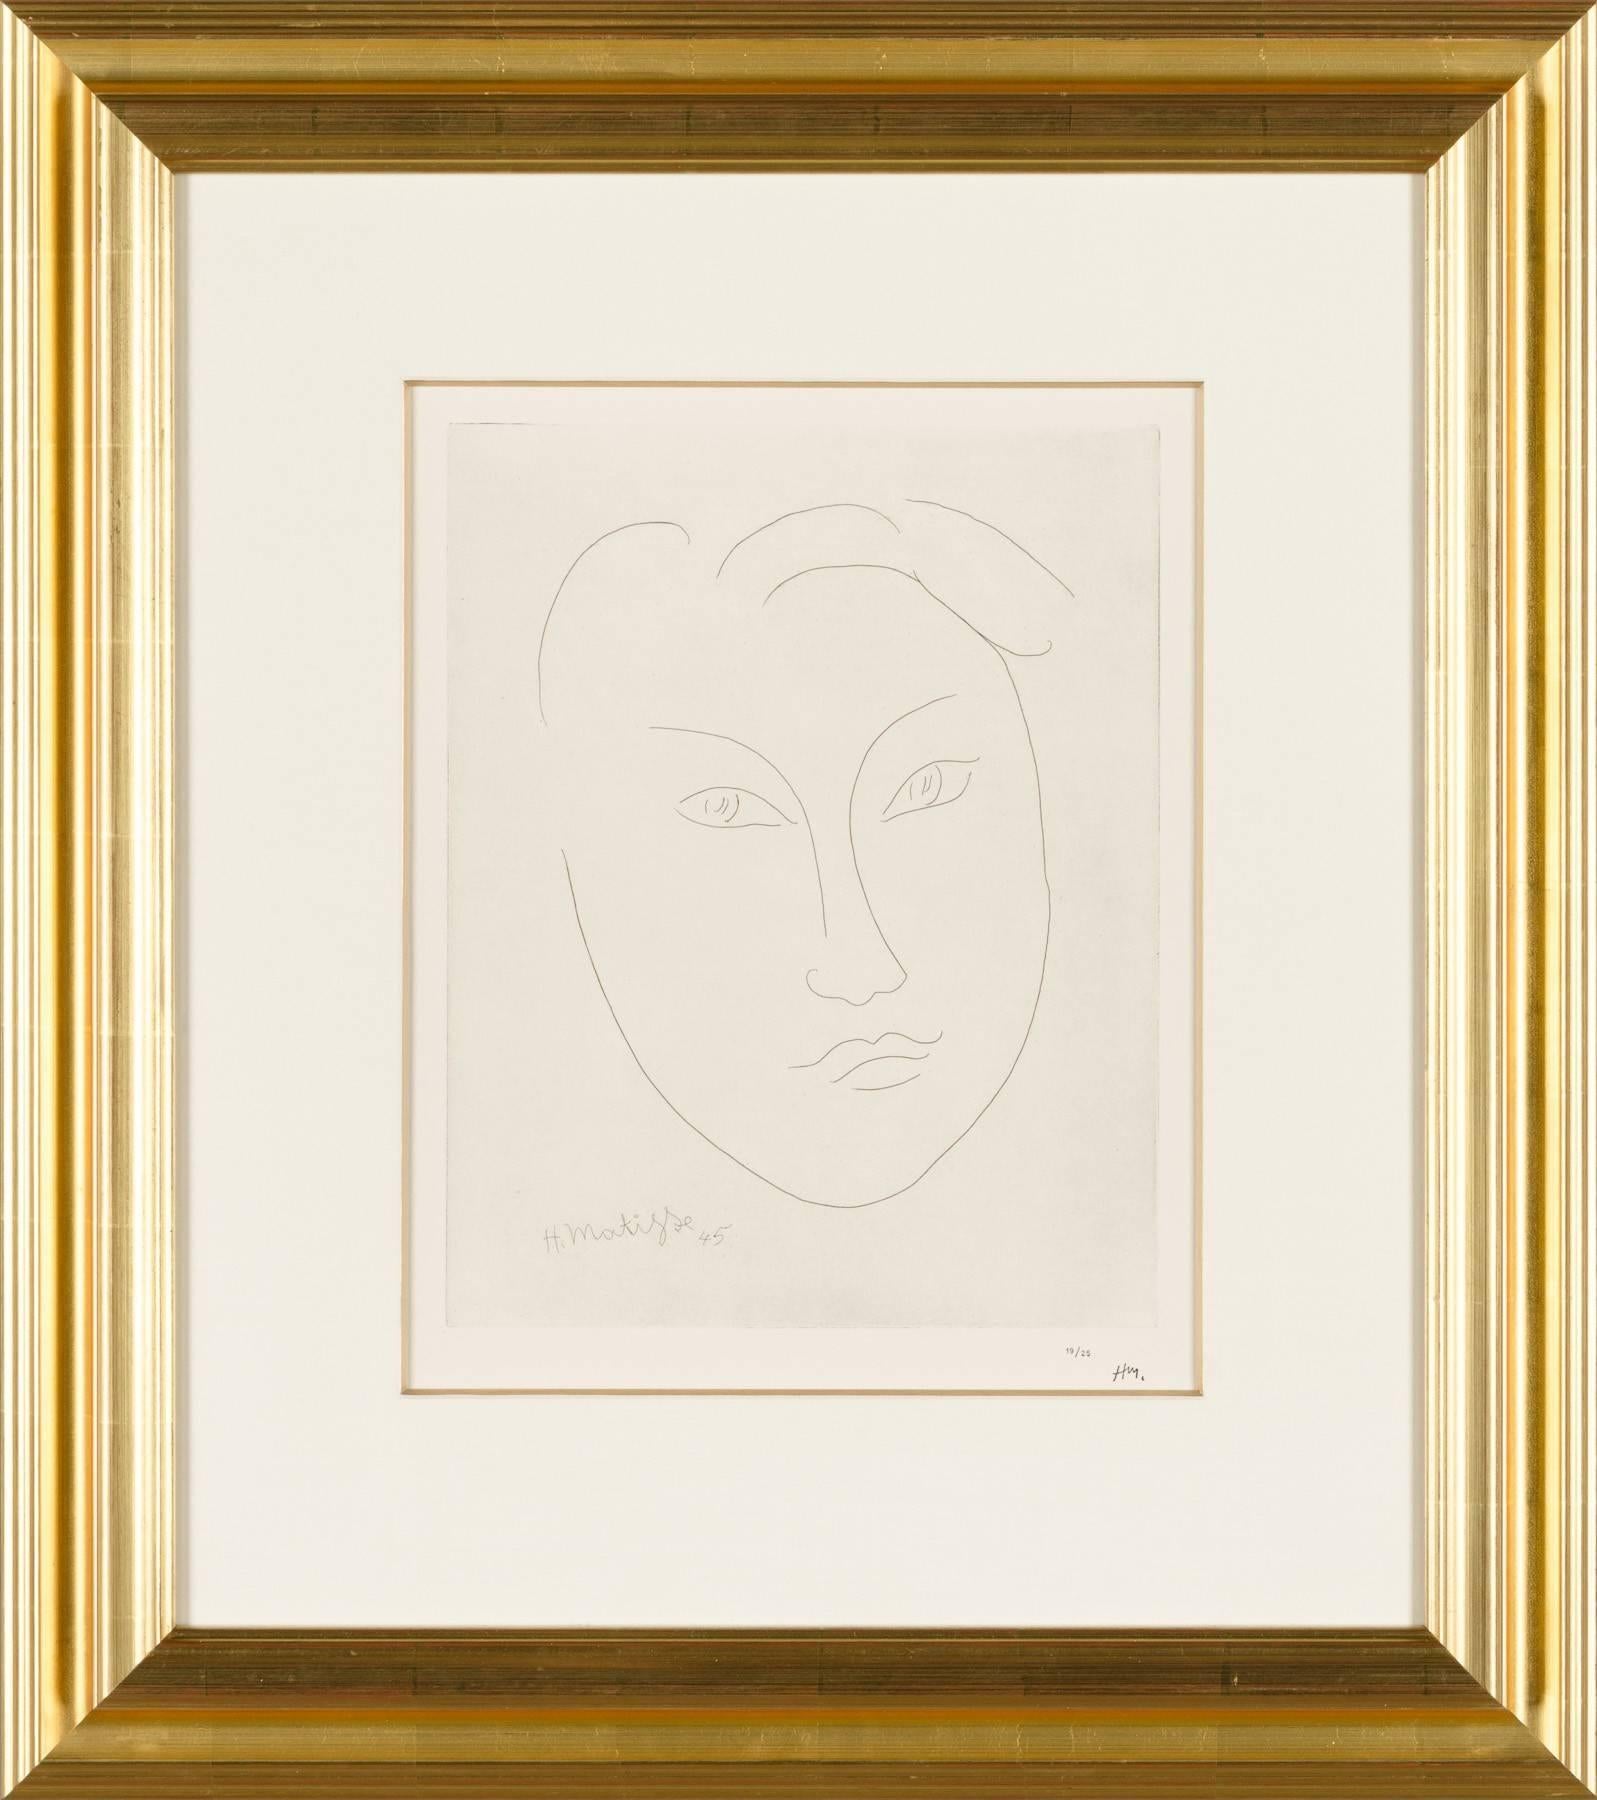 MASQUE DE JEUNE GARCON (Le masque d'un jeune garçon) - Print de Henri Matisse